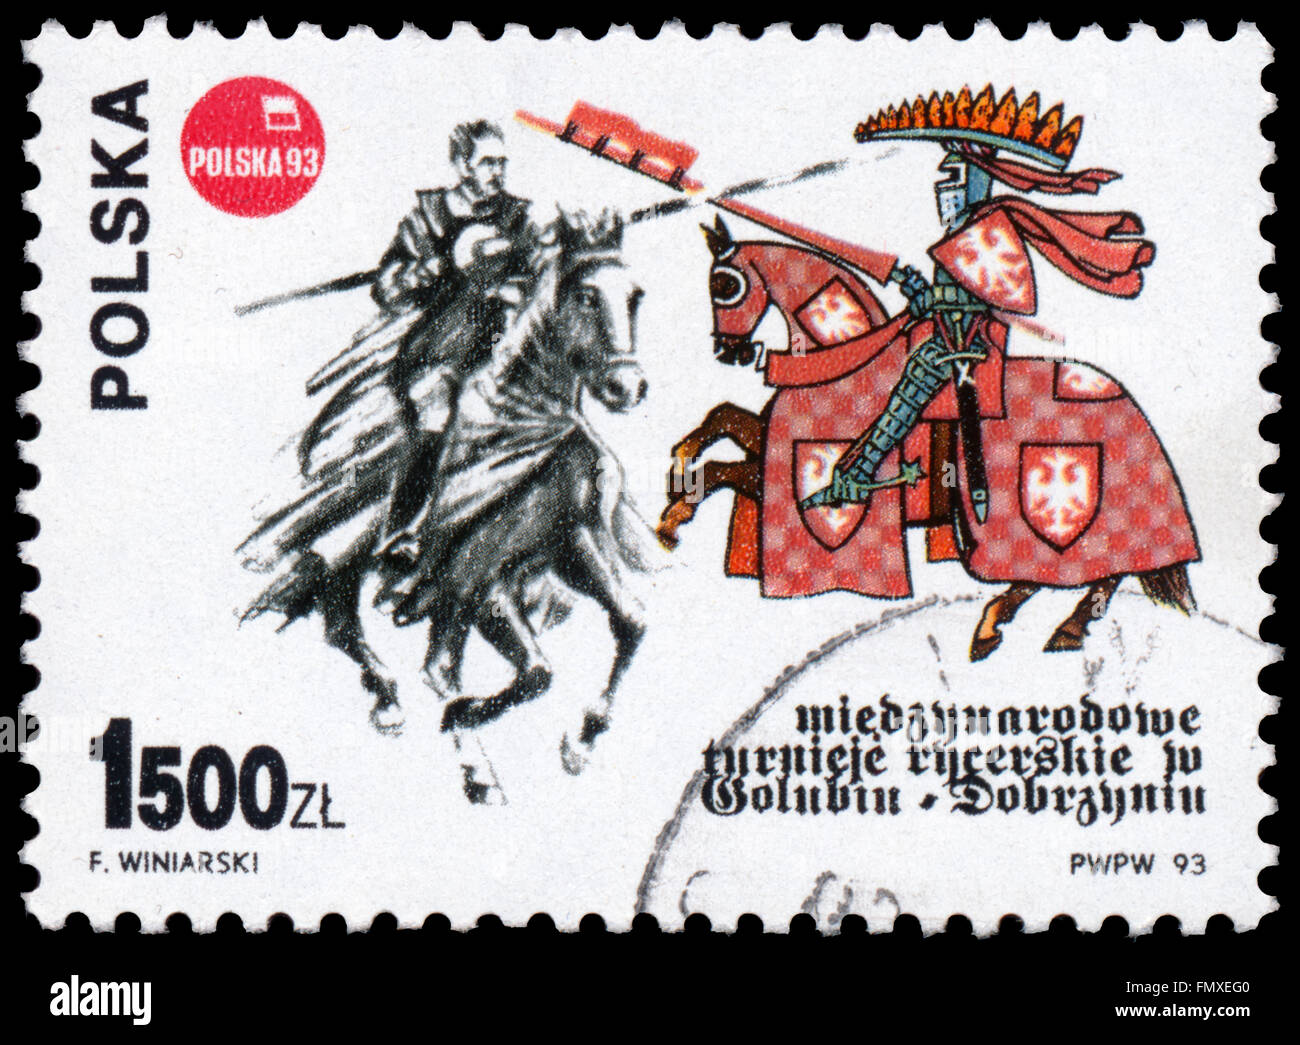 BUDAPEST, Ungarn - 12. März 2016: eine Briefmarke gedruckt in Polen zeigt Ritterturnier in Golub Dobrzyn, ca. 1993 Stockfoto